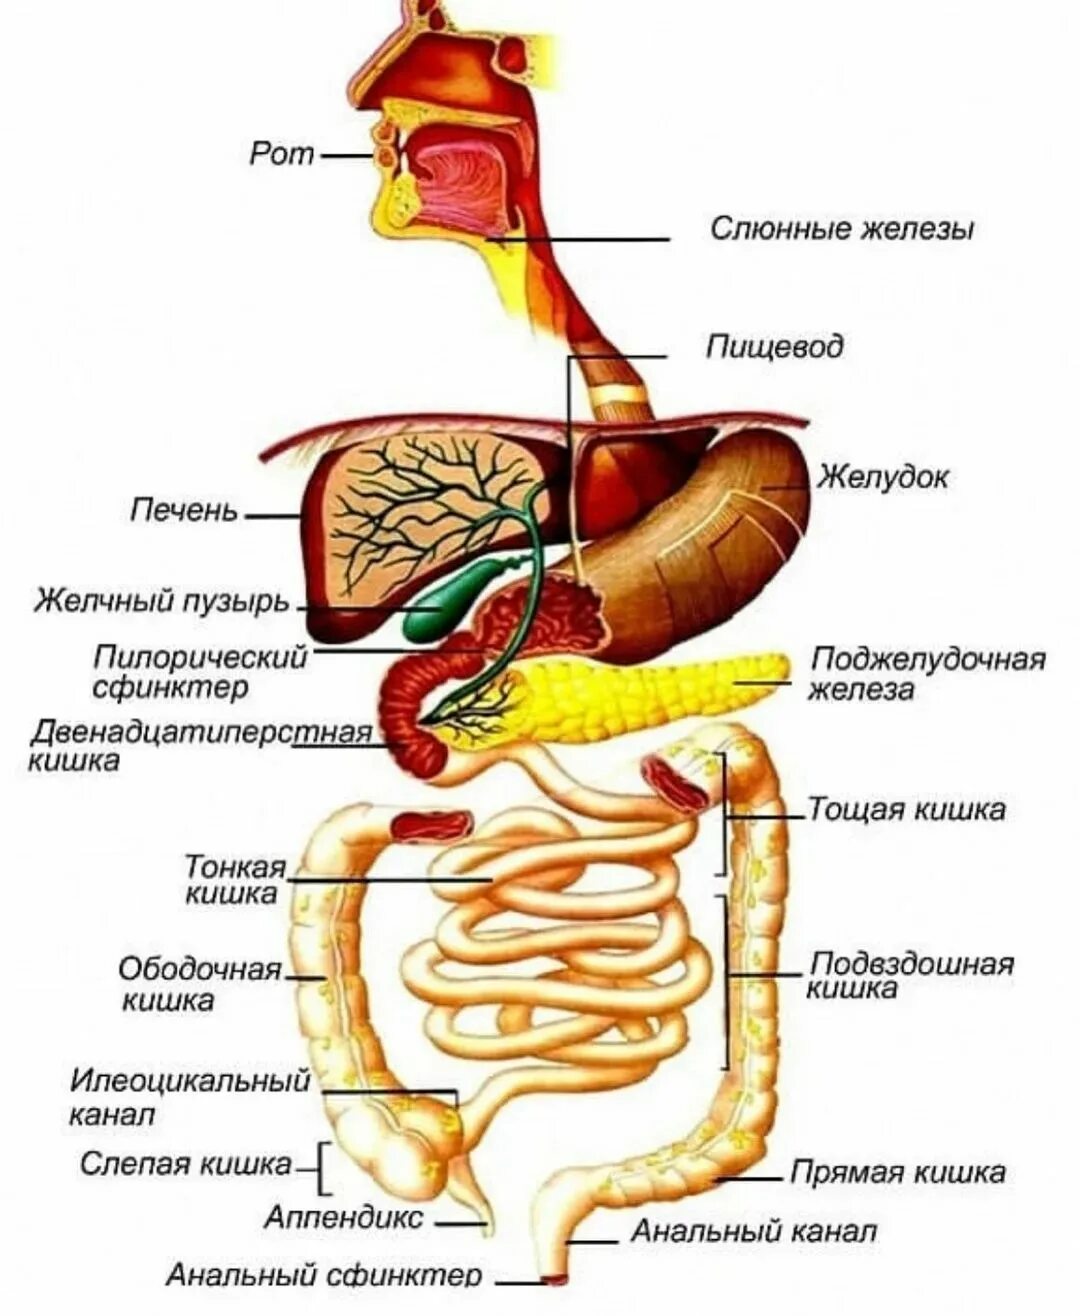 Глотка пищевод желудок двенадцатиперстная кишка. Строение желудочно-кишечного тракта. Схема желудочно-кишечного тракта. Анатомия пищеварительного тракта человека. Строение отделов желудочно-кишечного тракта.